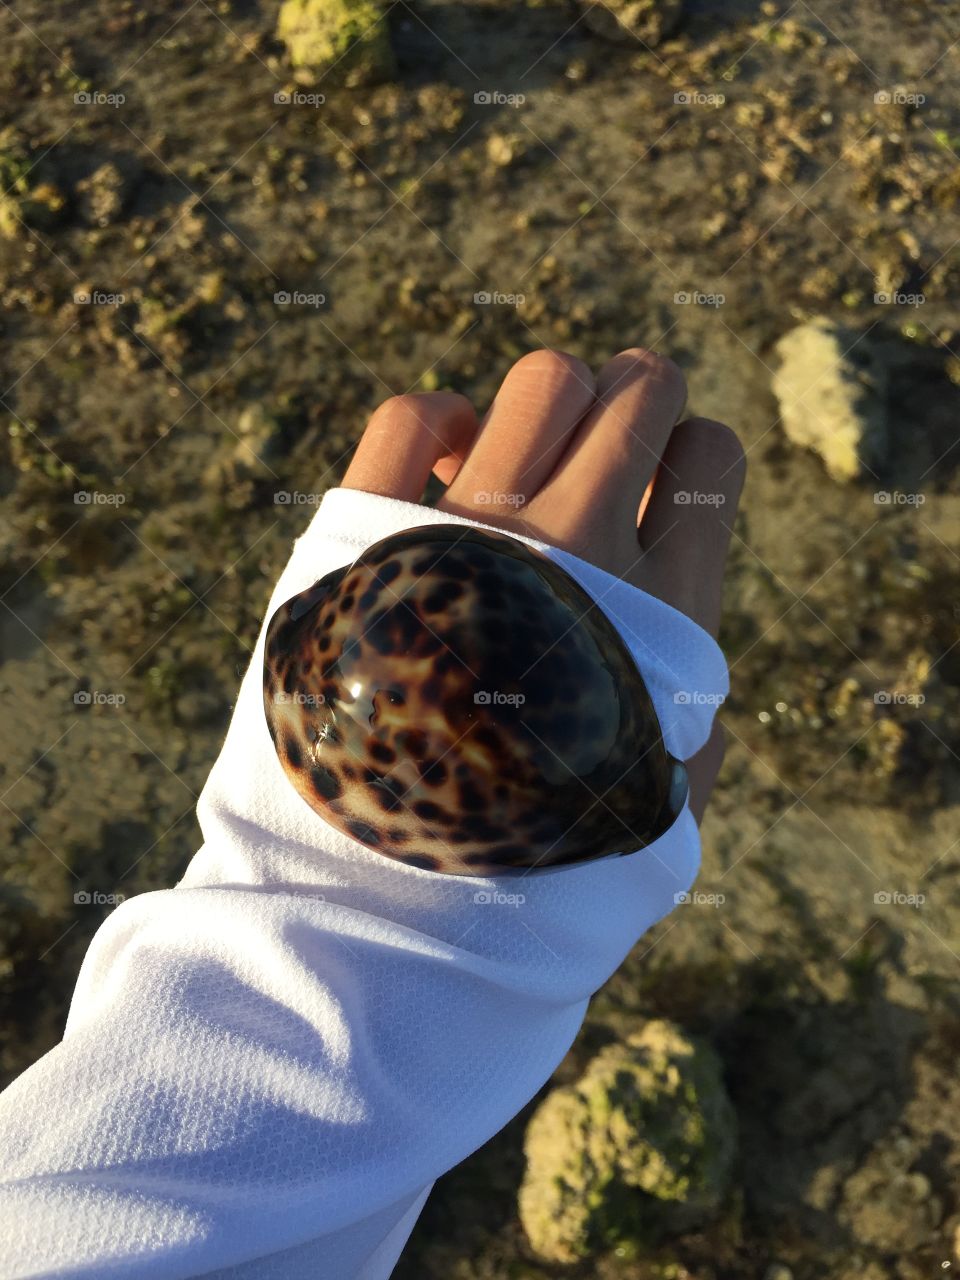 Sea shells 🐚